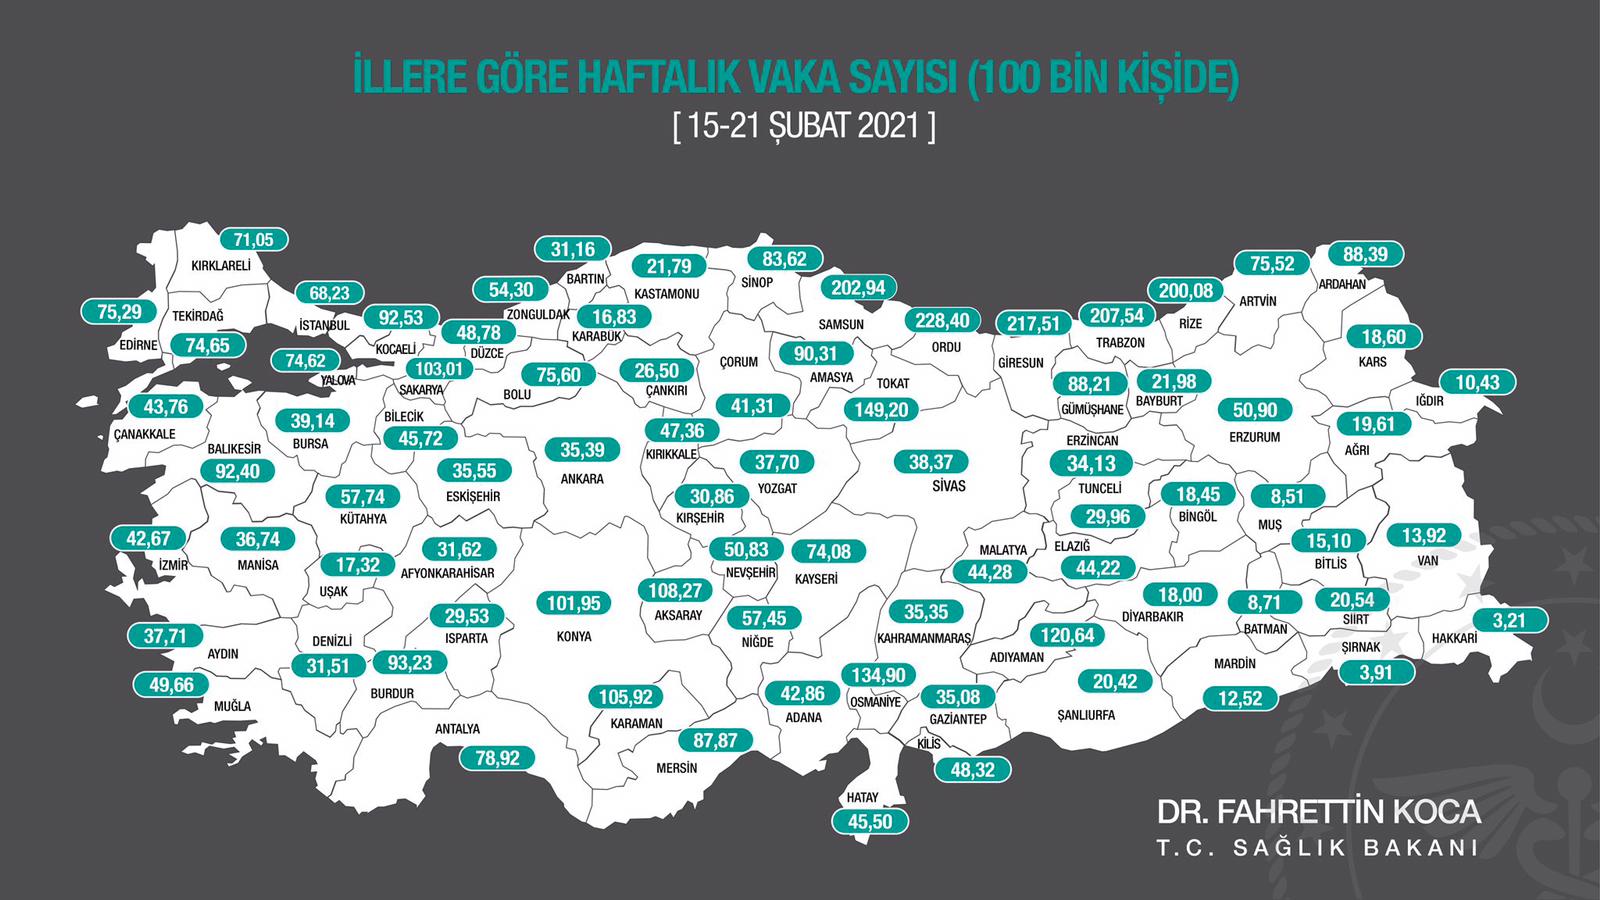 Son Dakika... Bakan Koca illere göre haftalık vaka sayılarını açıkladı. Gaziantep'te yükseliş var!..